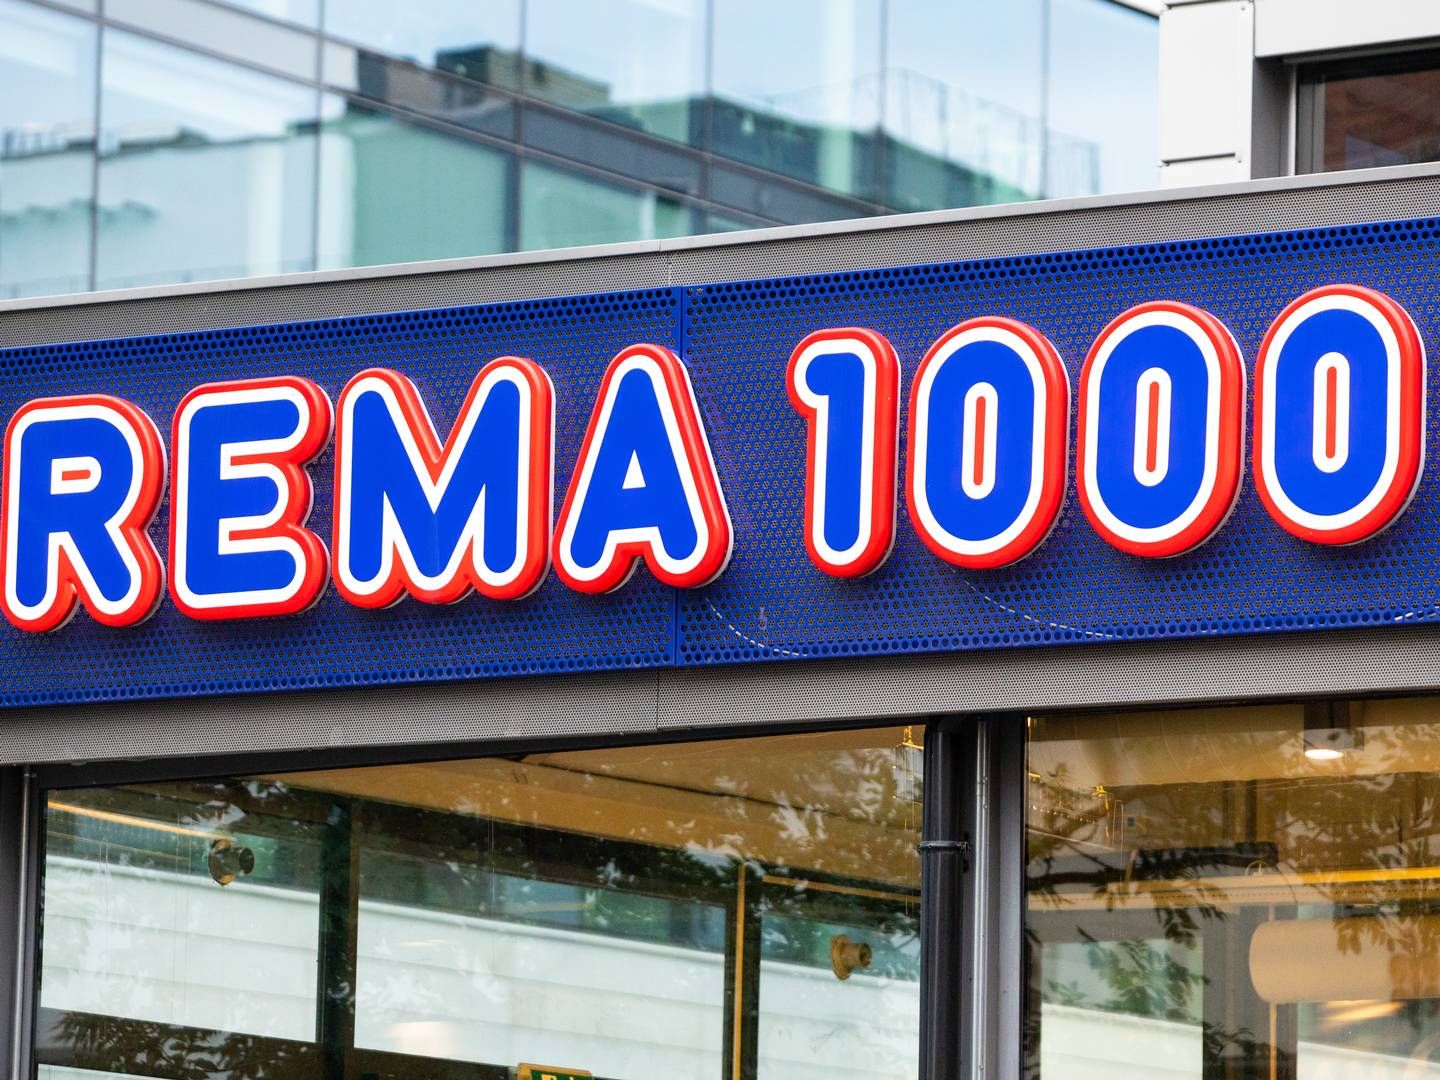 MARKED: Rema 1000 kan komme til å ta størst andel av det danske dagligvaremarkedet i framtida, viser nye handelsprognoser. | Foto: NTB scanpix